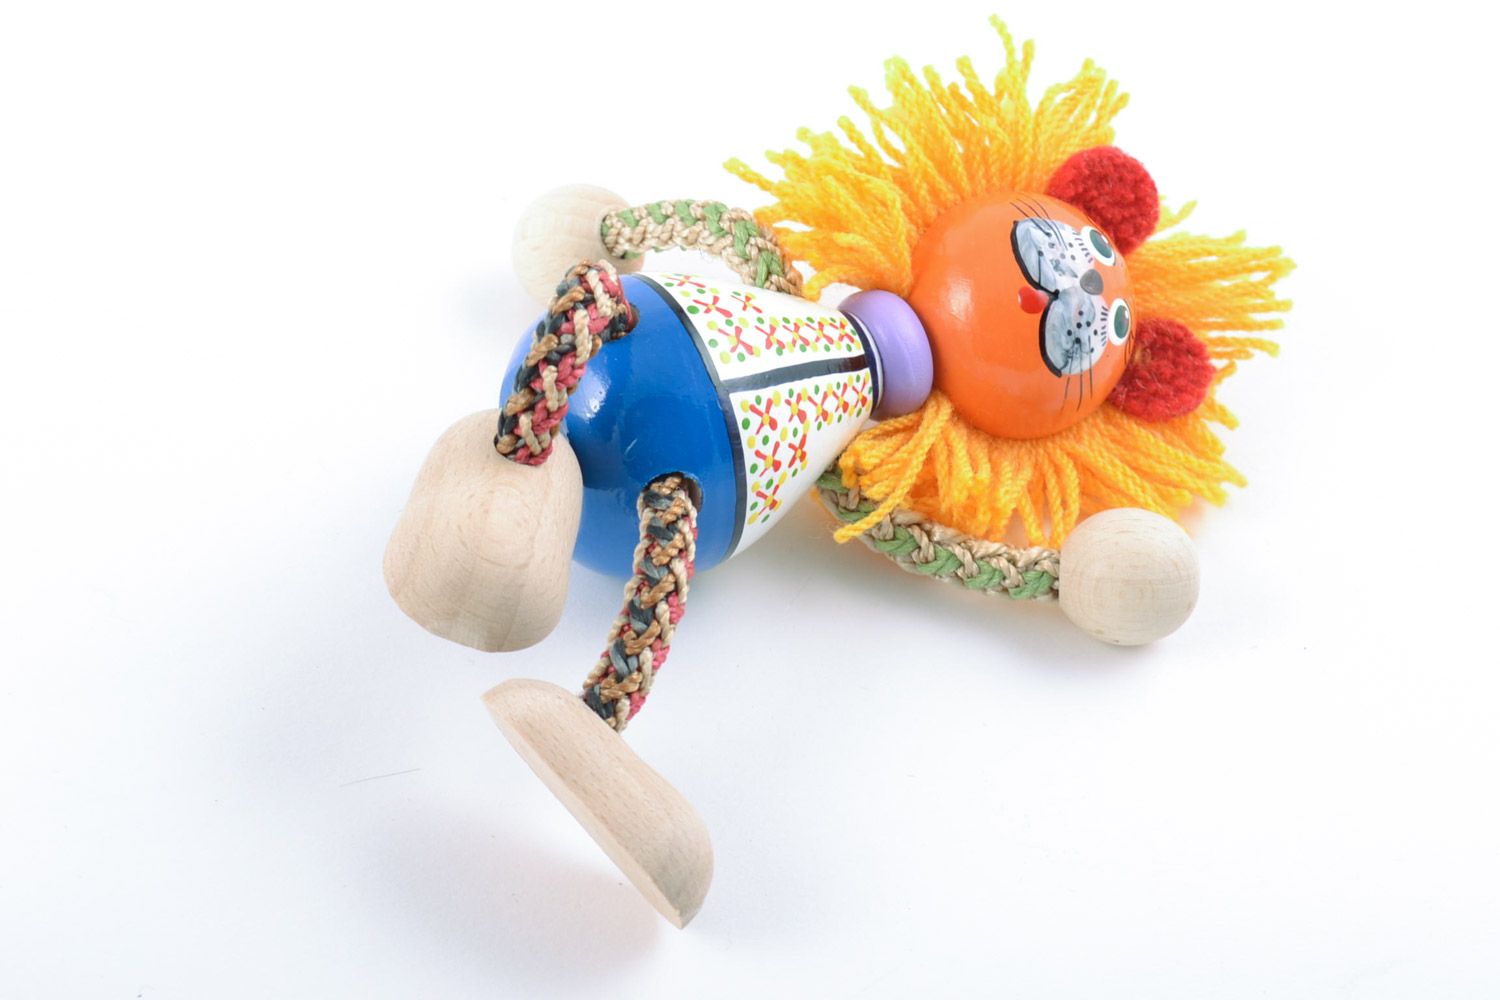 Авторская деревянная игрушка из бука расписанная красками вручную Солнечный лев фото 5